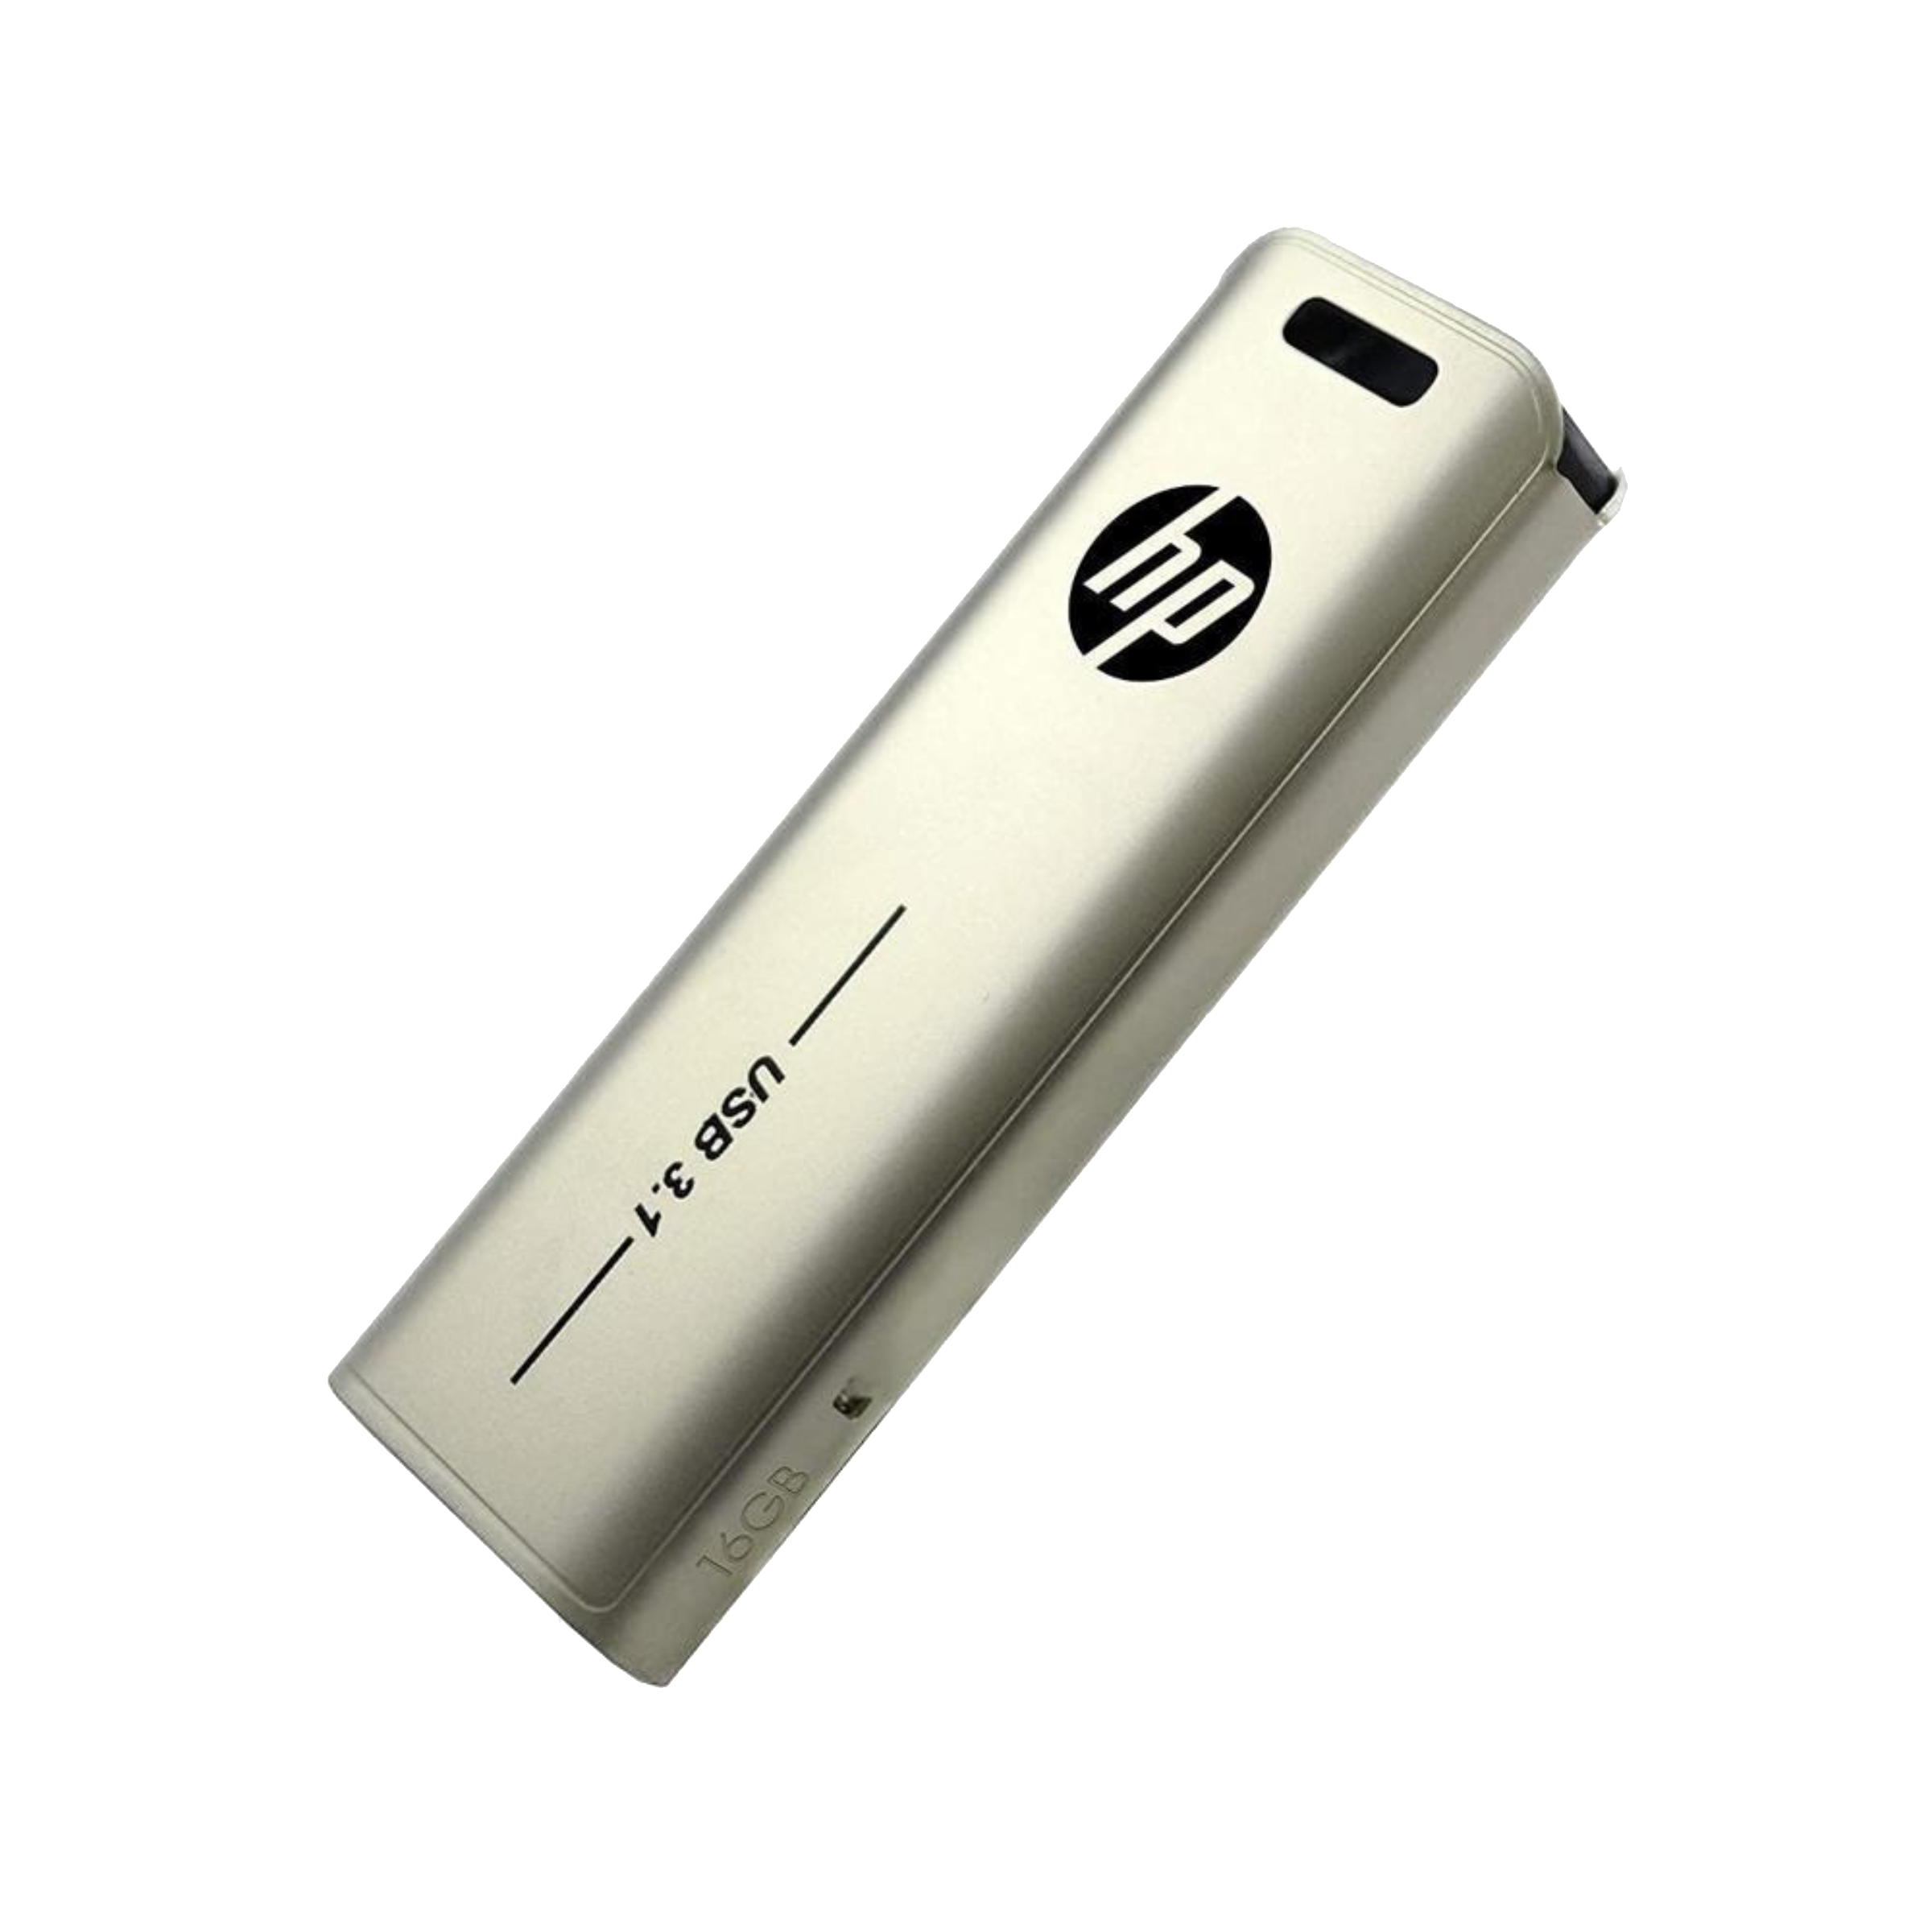 HP x796w 16GB USB 3.1 Flash Drive (Push-Pull Design, MM-USB016GB-33P, Golden)_1